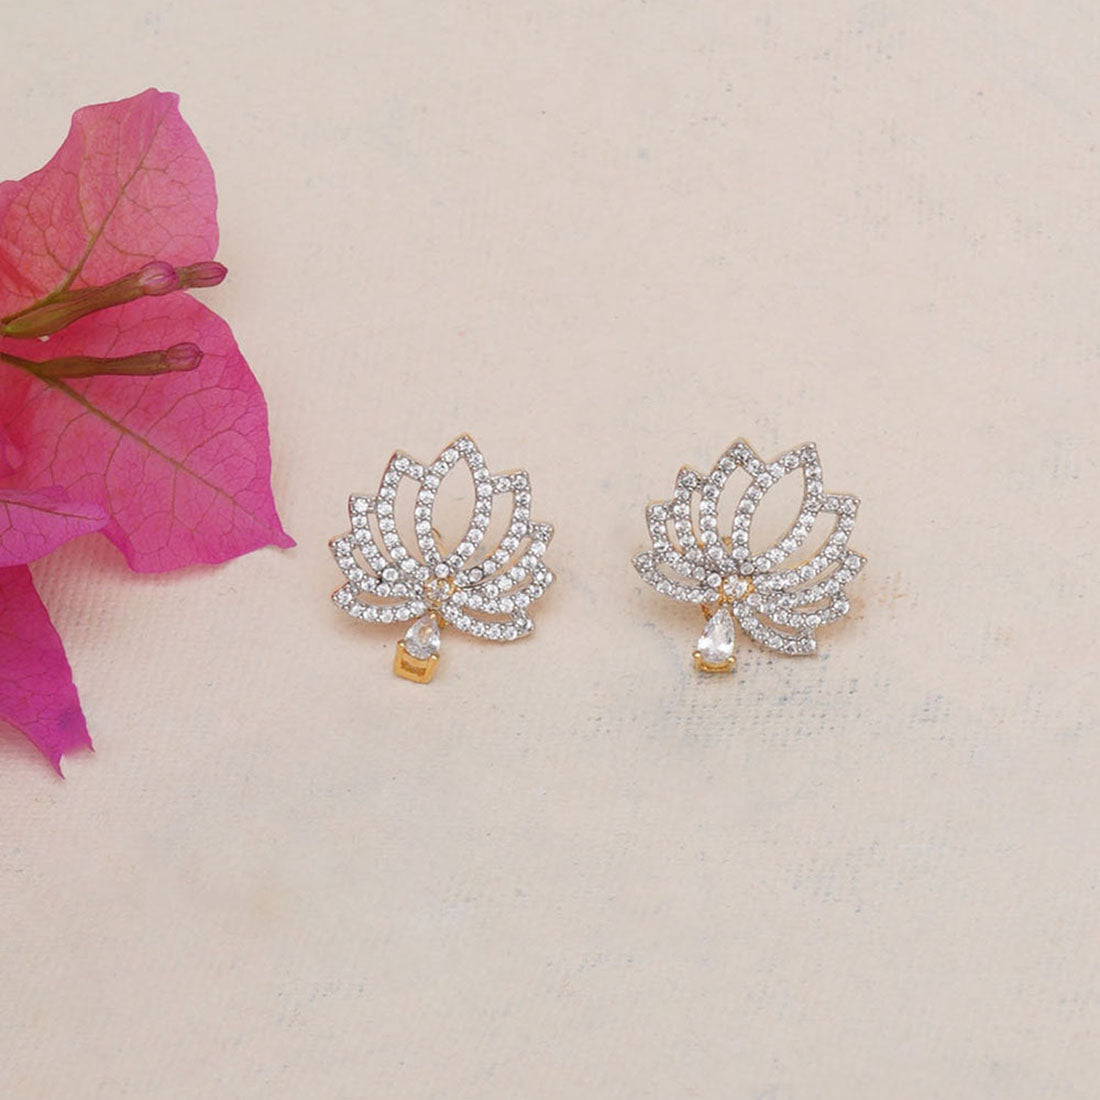 Elegant Traditional Meenakari Lotus Design Earrings for Women and Girls